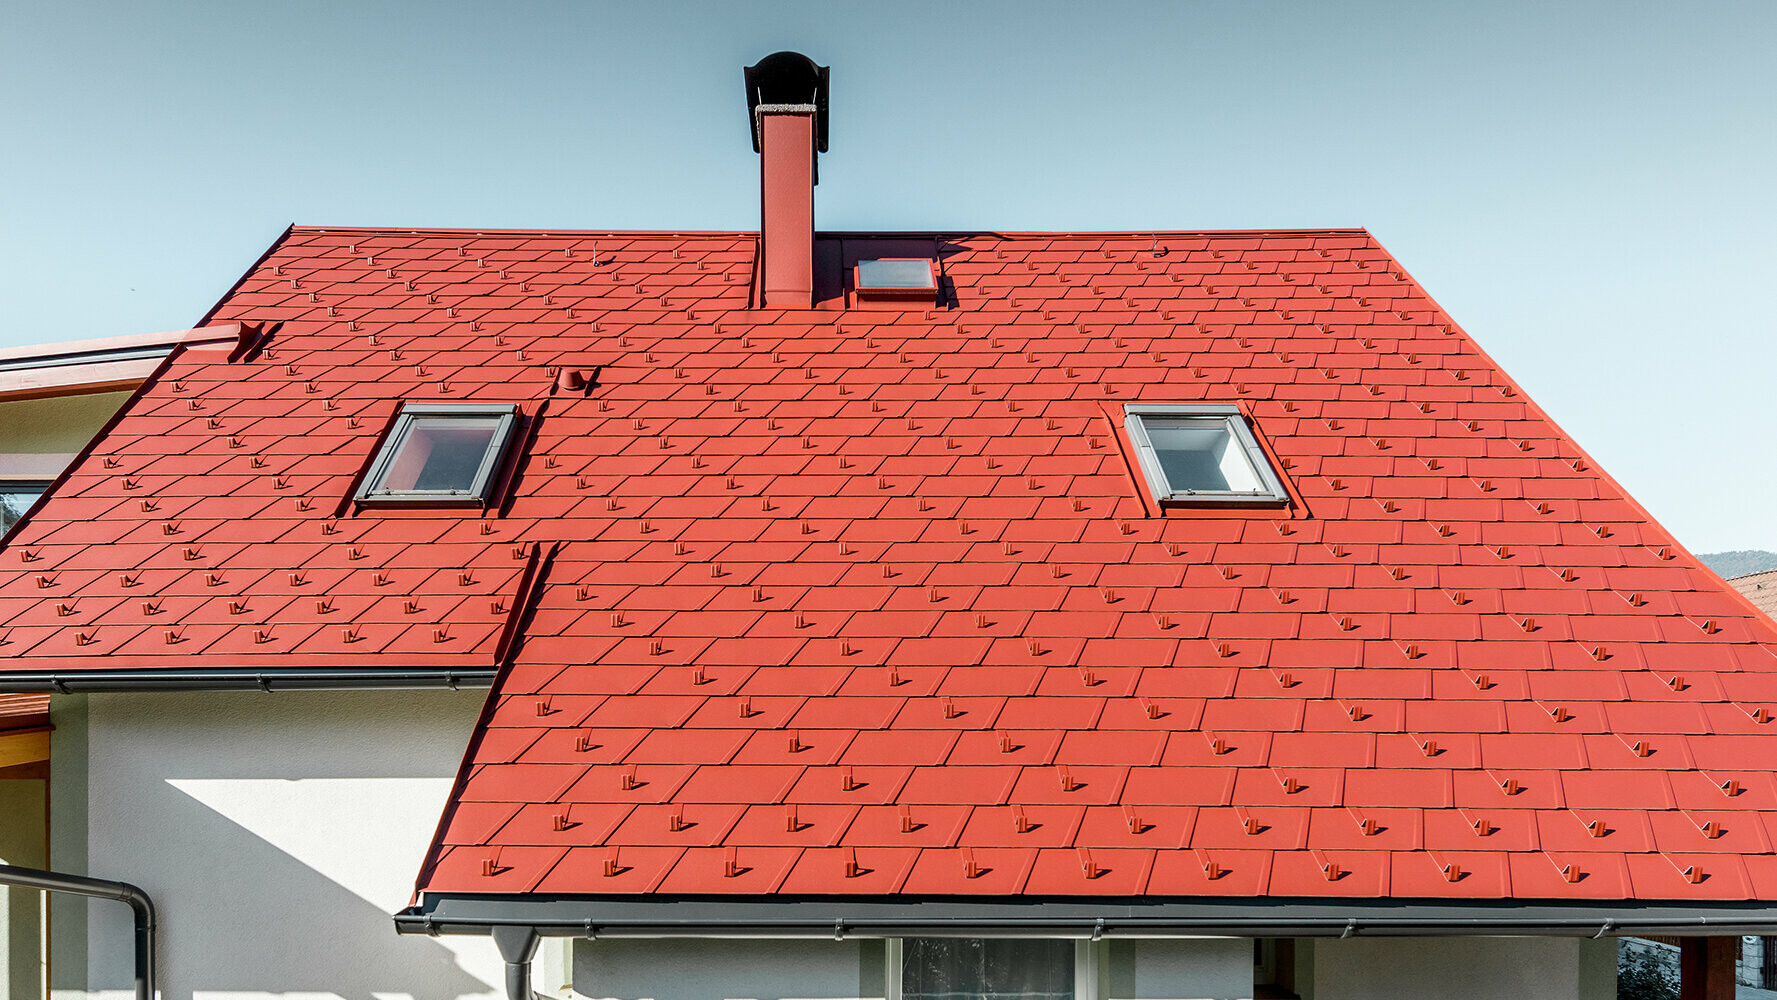 Pokrytí střechy PREFA falcovanými střešními šindeli DS. 19 v barvě P.10 tmavě červené.